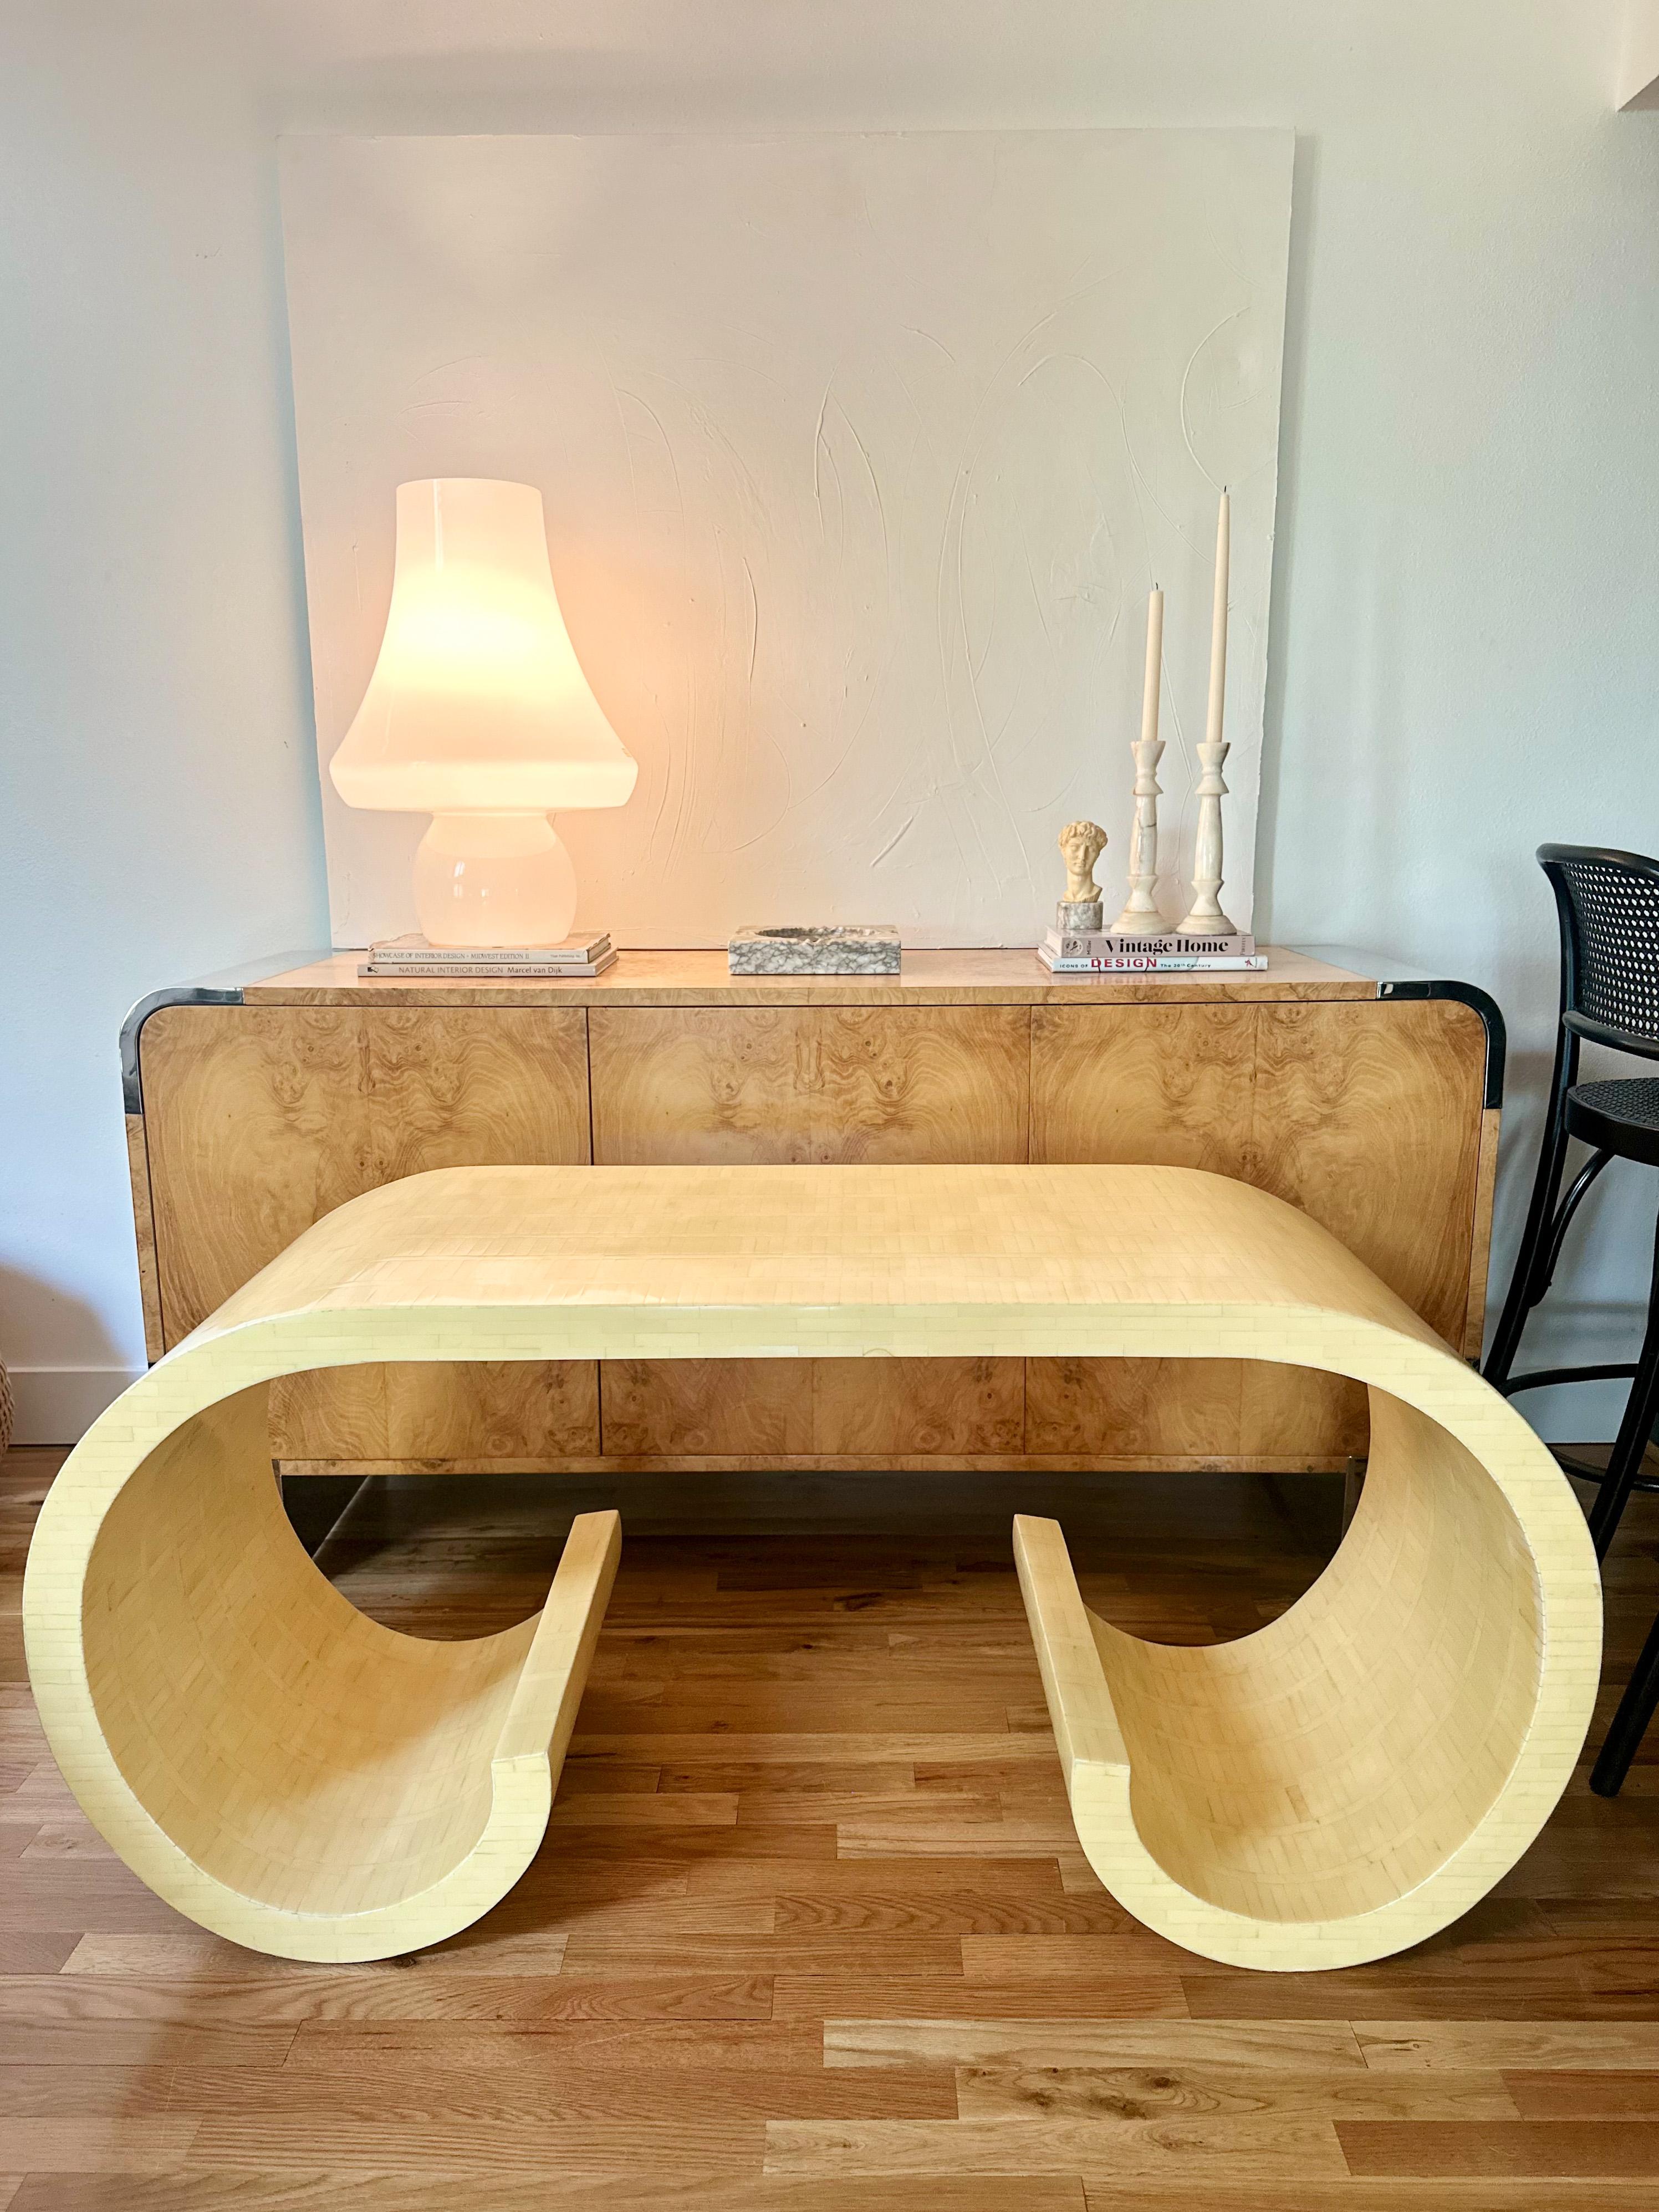 Exquise console ou bureau à volutes en os tessellé, attribuée à Enrique Garcel pour Jimeco, fabriquée en Colombie vers les années 1970. Cette table rare est une œuvre d'art artisanale, entièrement enveloppée d'une mosaïque de placage d'os qui a